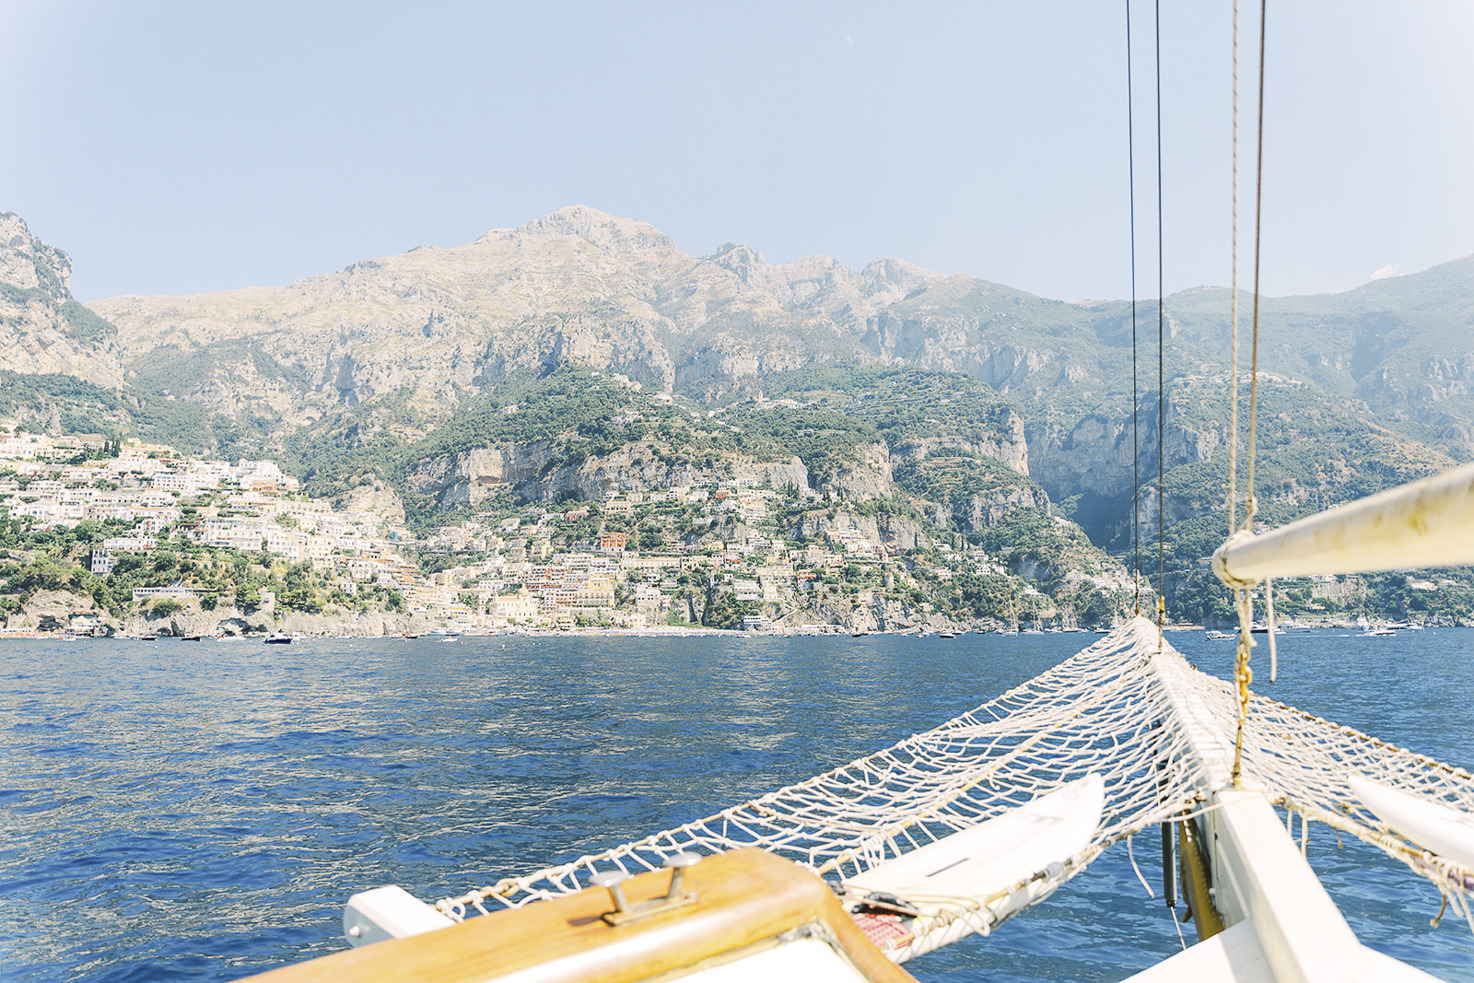 Boat tour on the Amalfi Coast